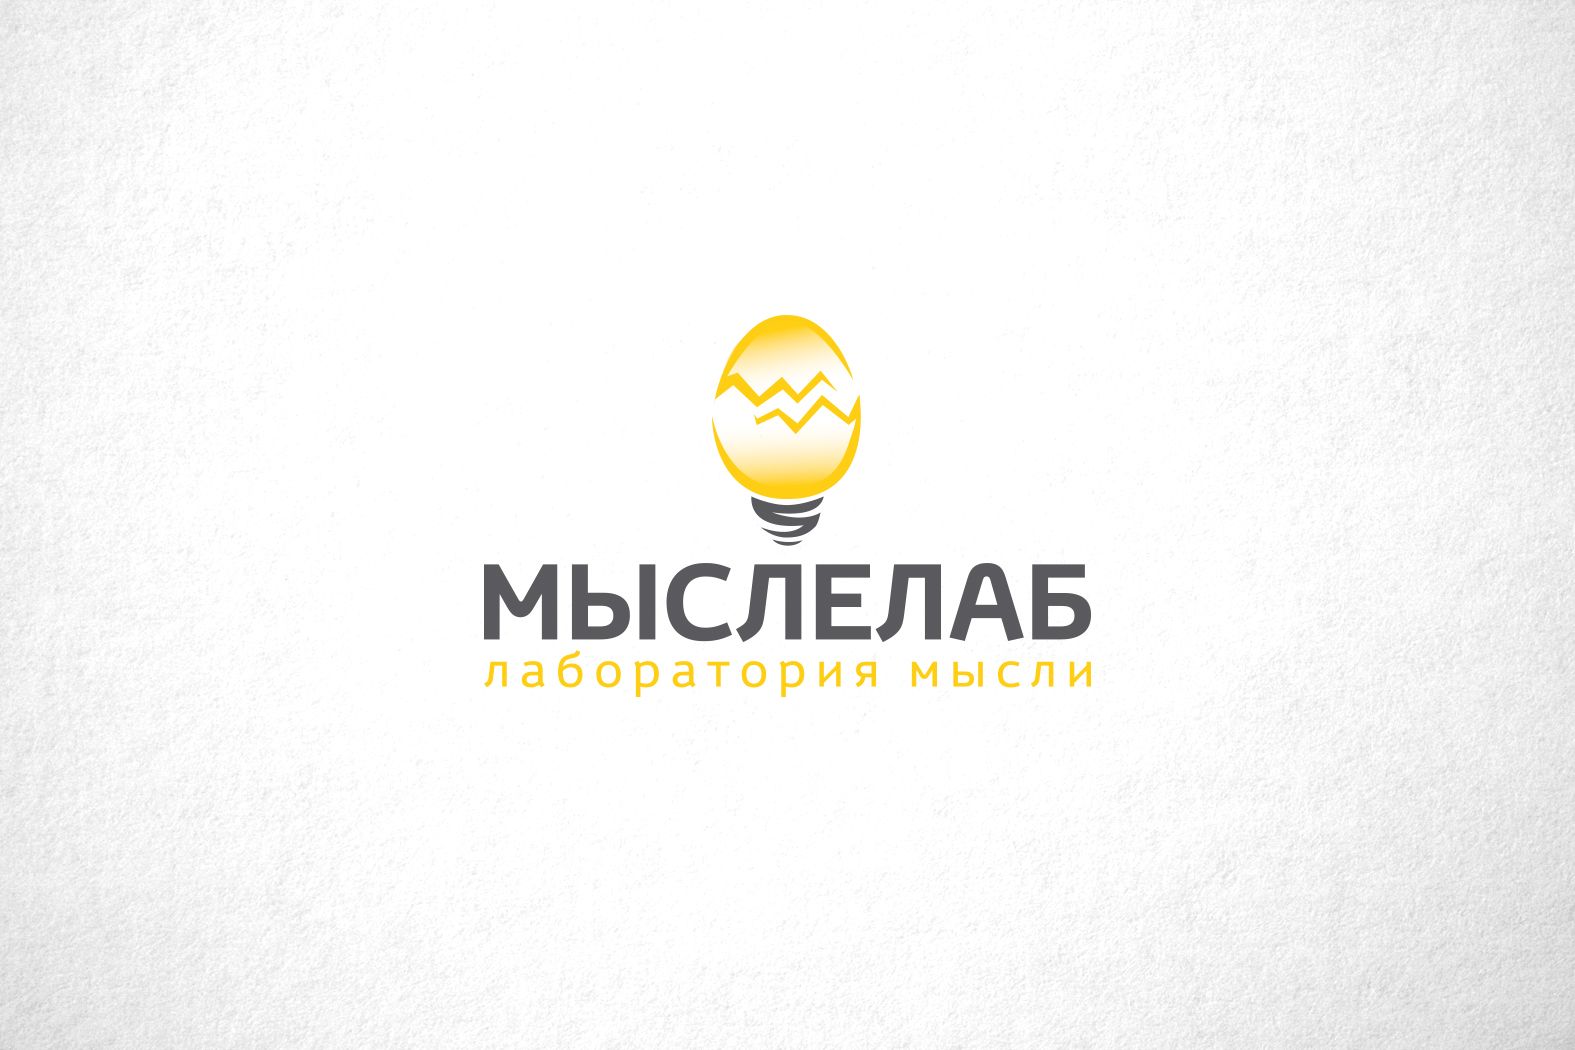 Мыслелаб! Логотип для интеллектуального центра - дизайнер funkielevis